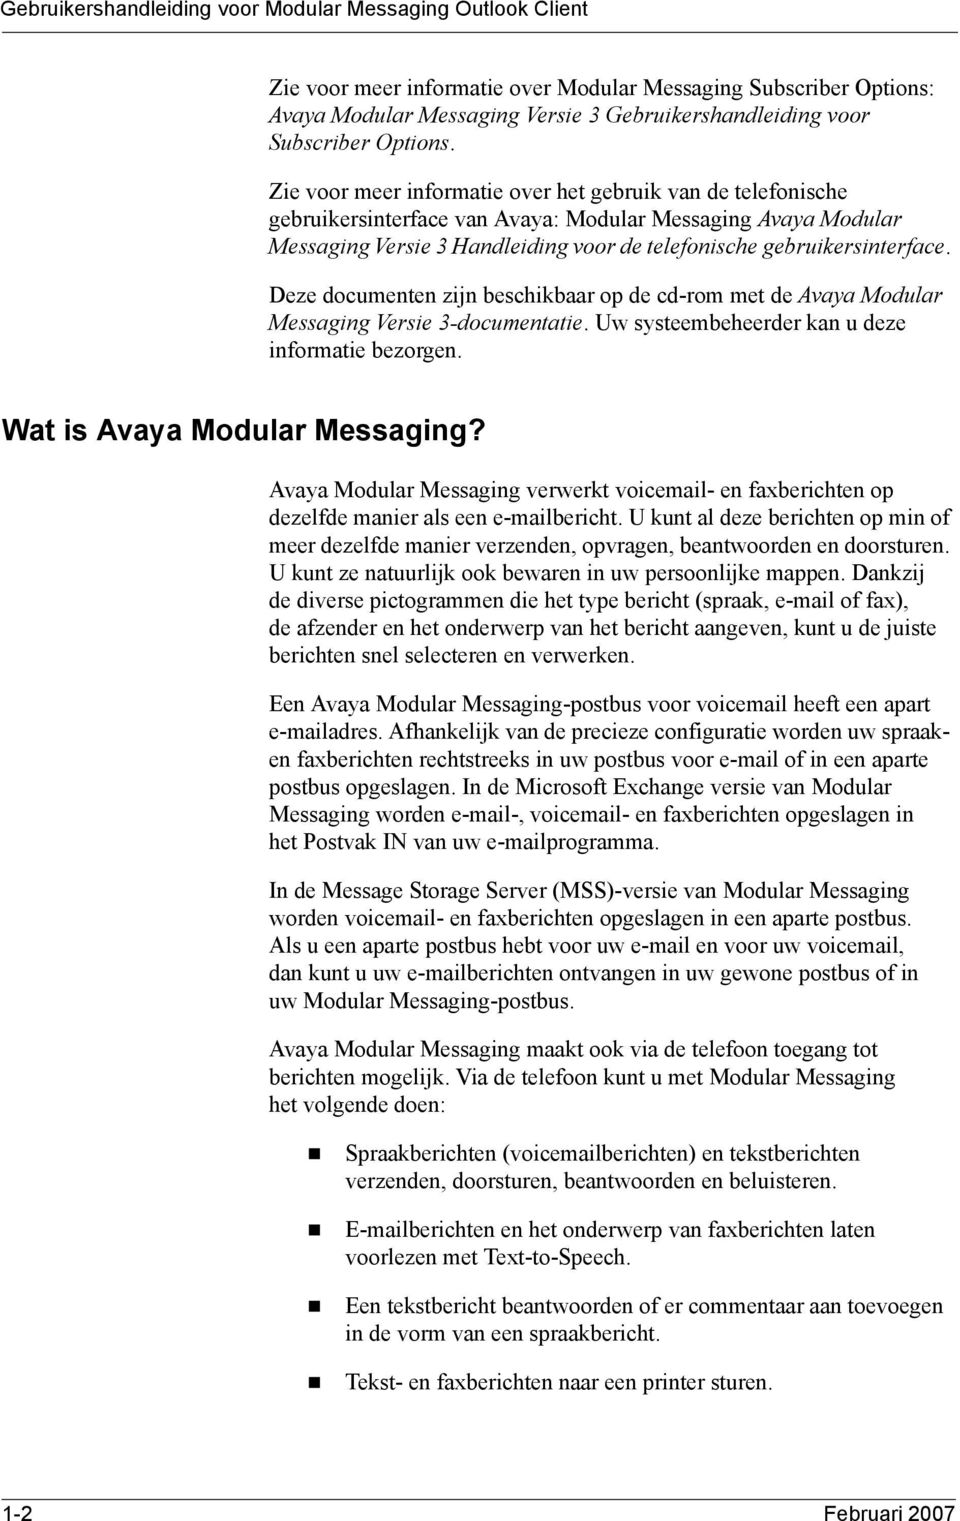 Zie voor meer informatie over het gebruik van de telefonische gebruikersinterface van Avaya: Modular Messaging Avaya Modular Messaging Versie 3 Handleiding voor de telefonische gebruikersinterface.